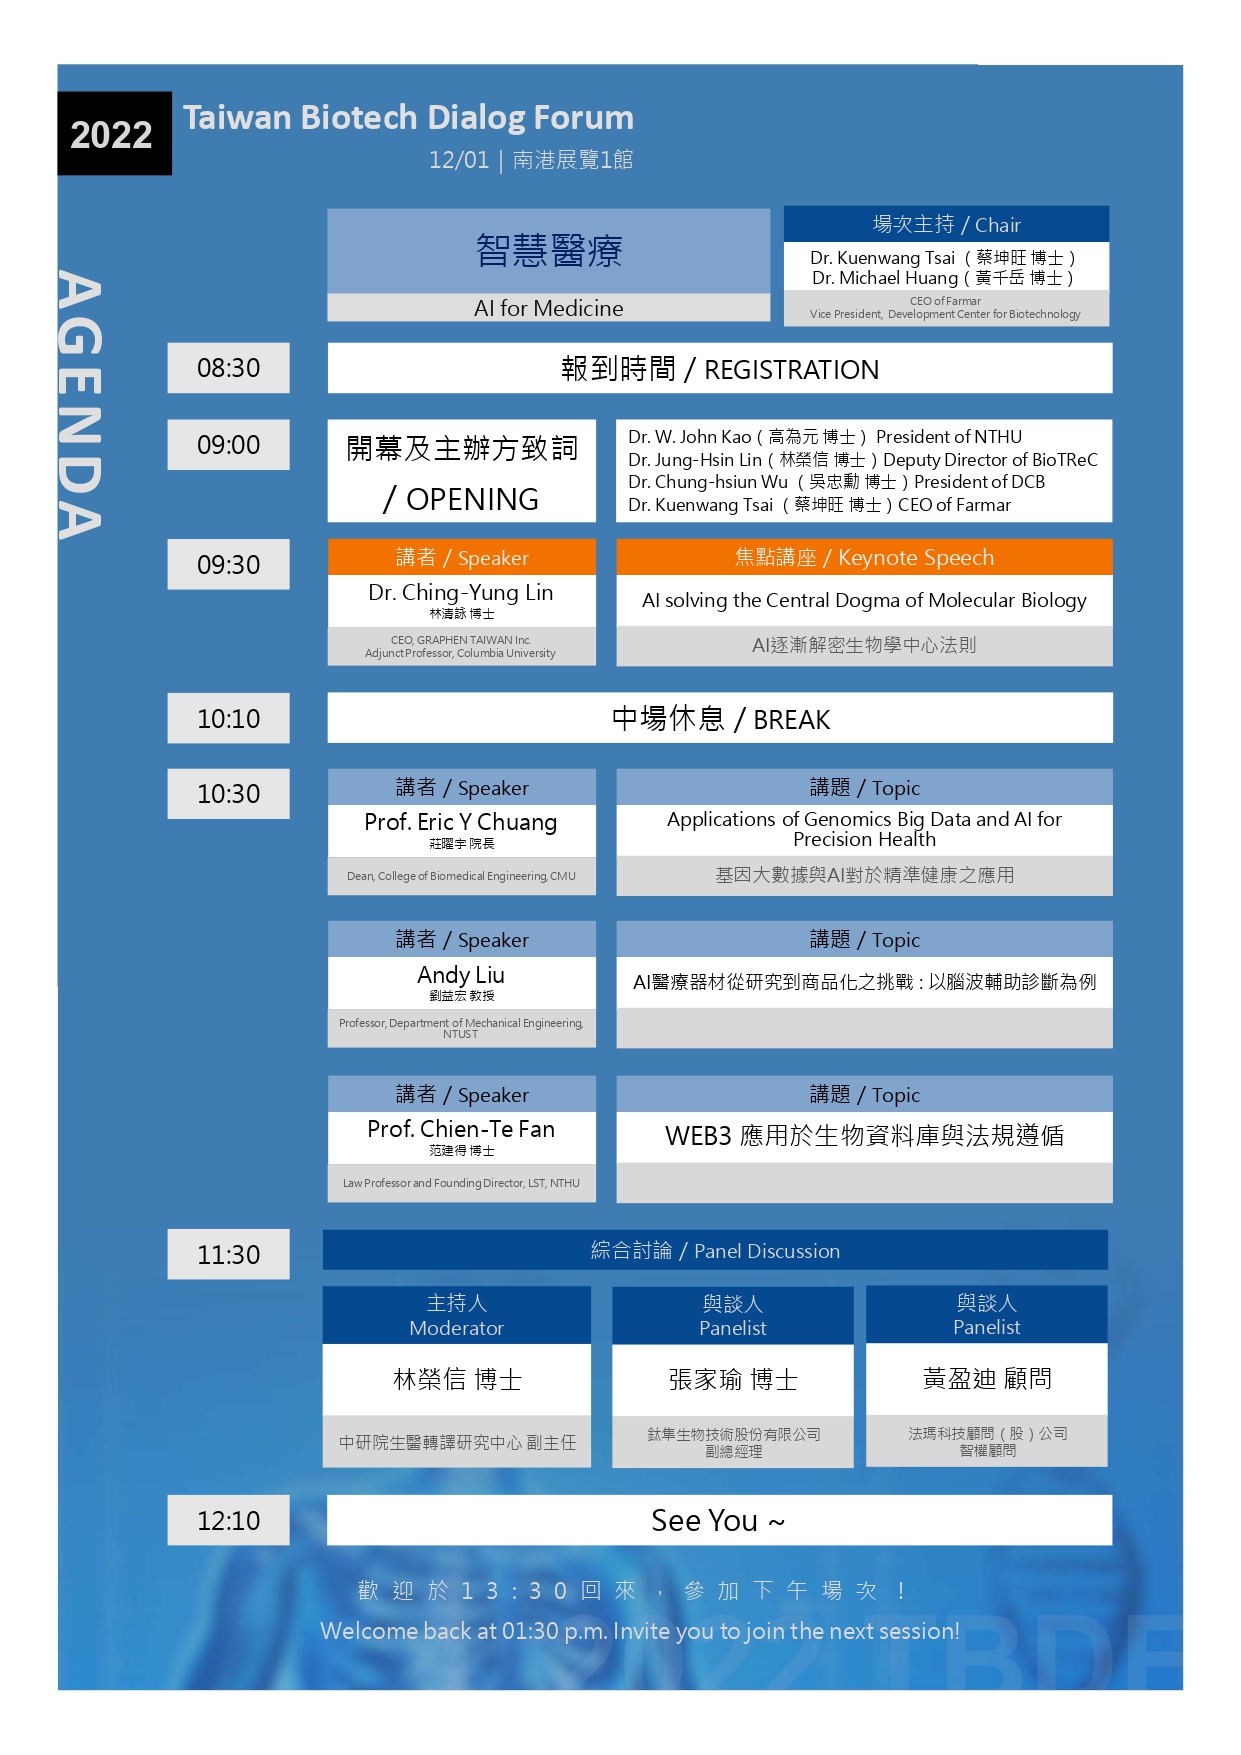 2022 第四屆台灣生物科技對話論壇，8:30報到，9:30開始第一場演講，12:10結束